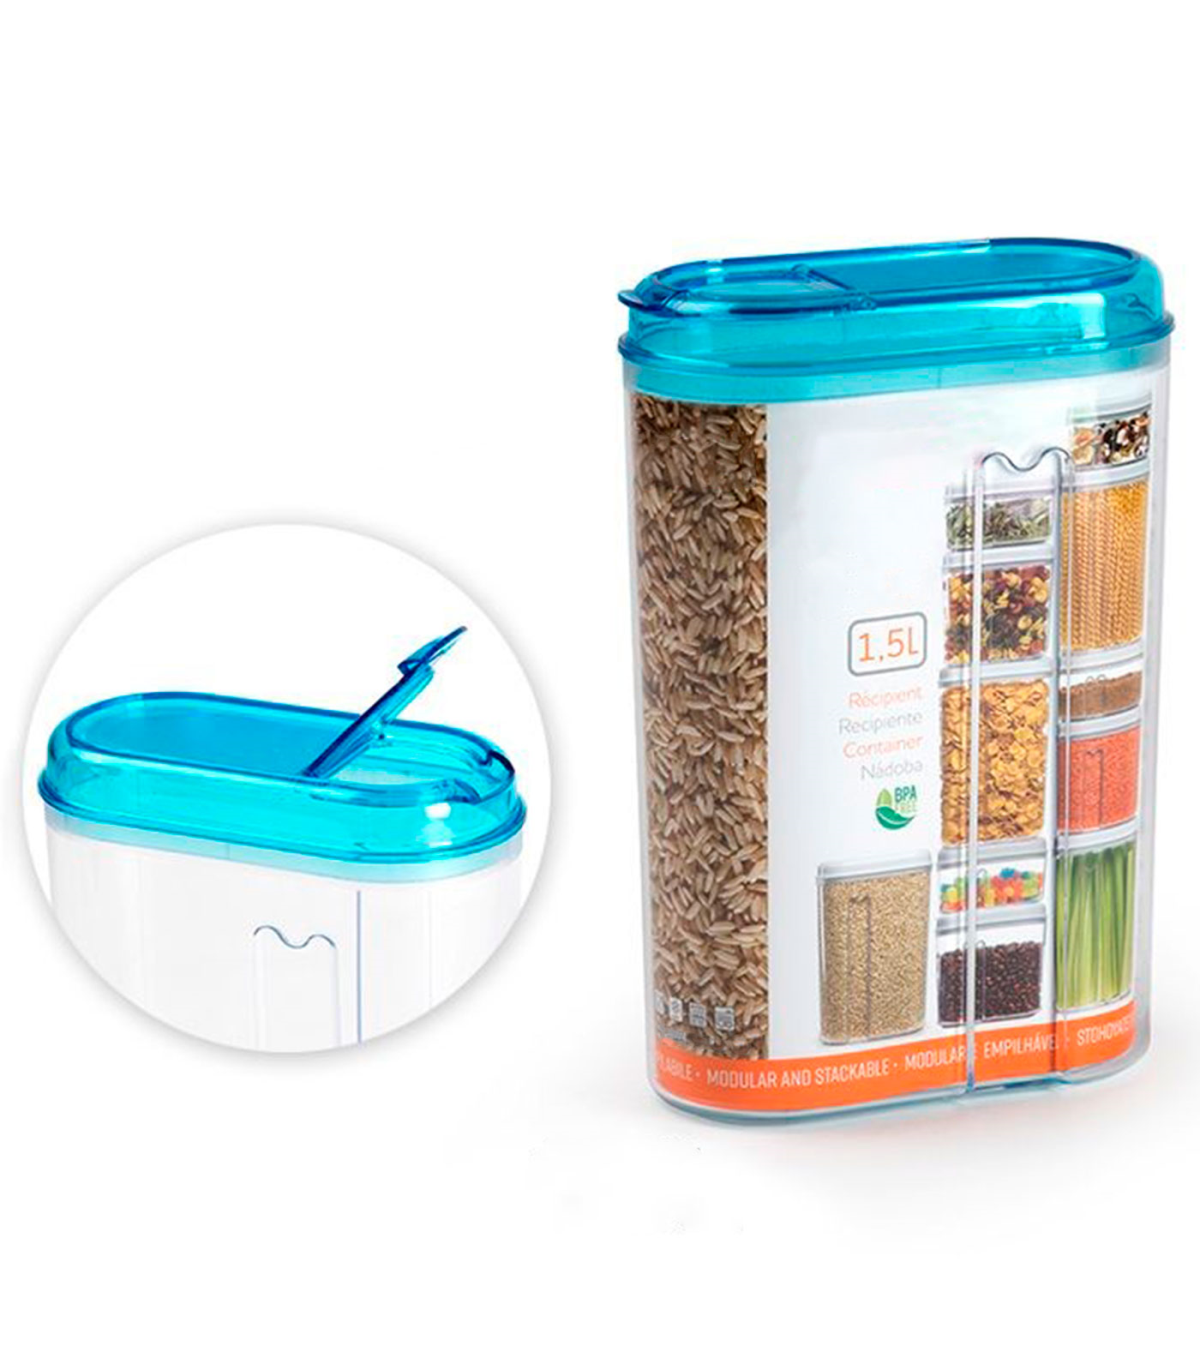 Tradineur - Recipiente reutilizable de plástico con tapa, bote de  almacenaje, pasta, legumbres, cereales, frutos secos, café, fa